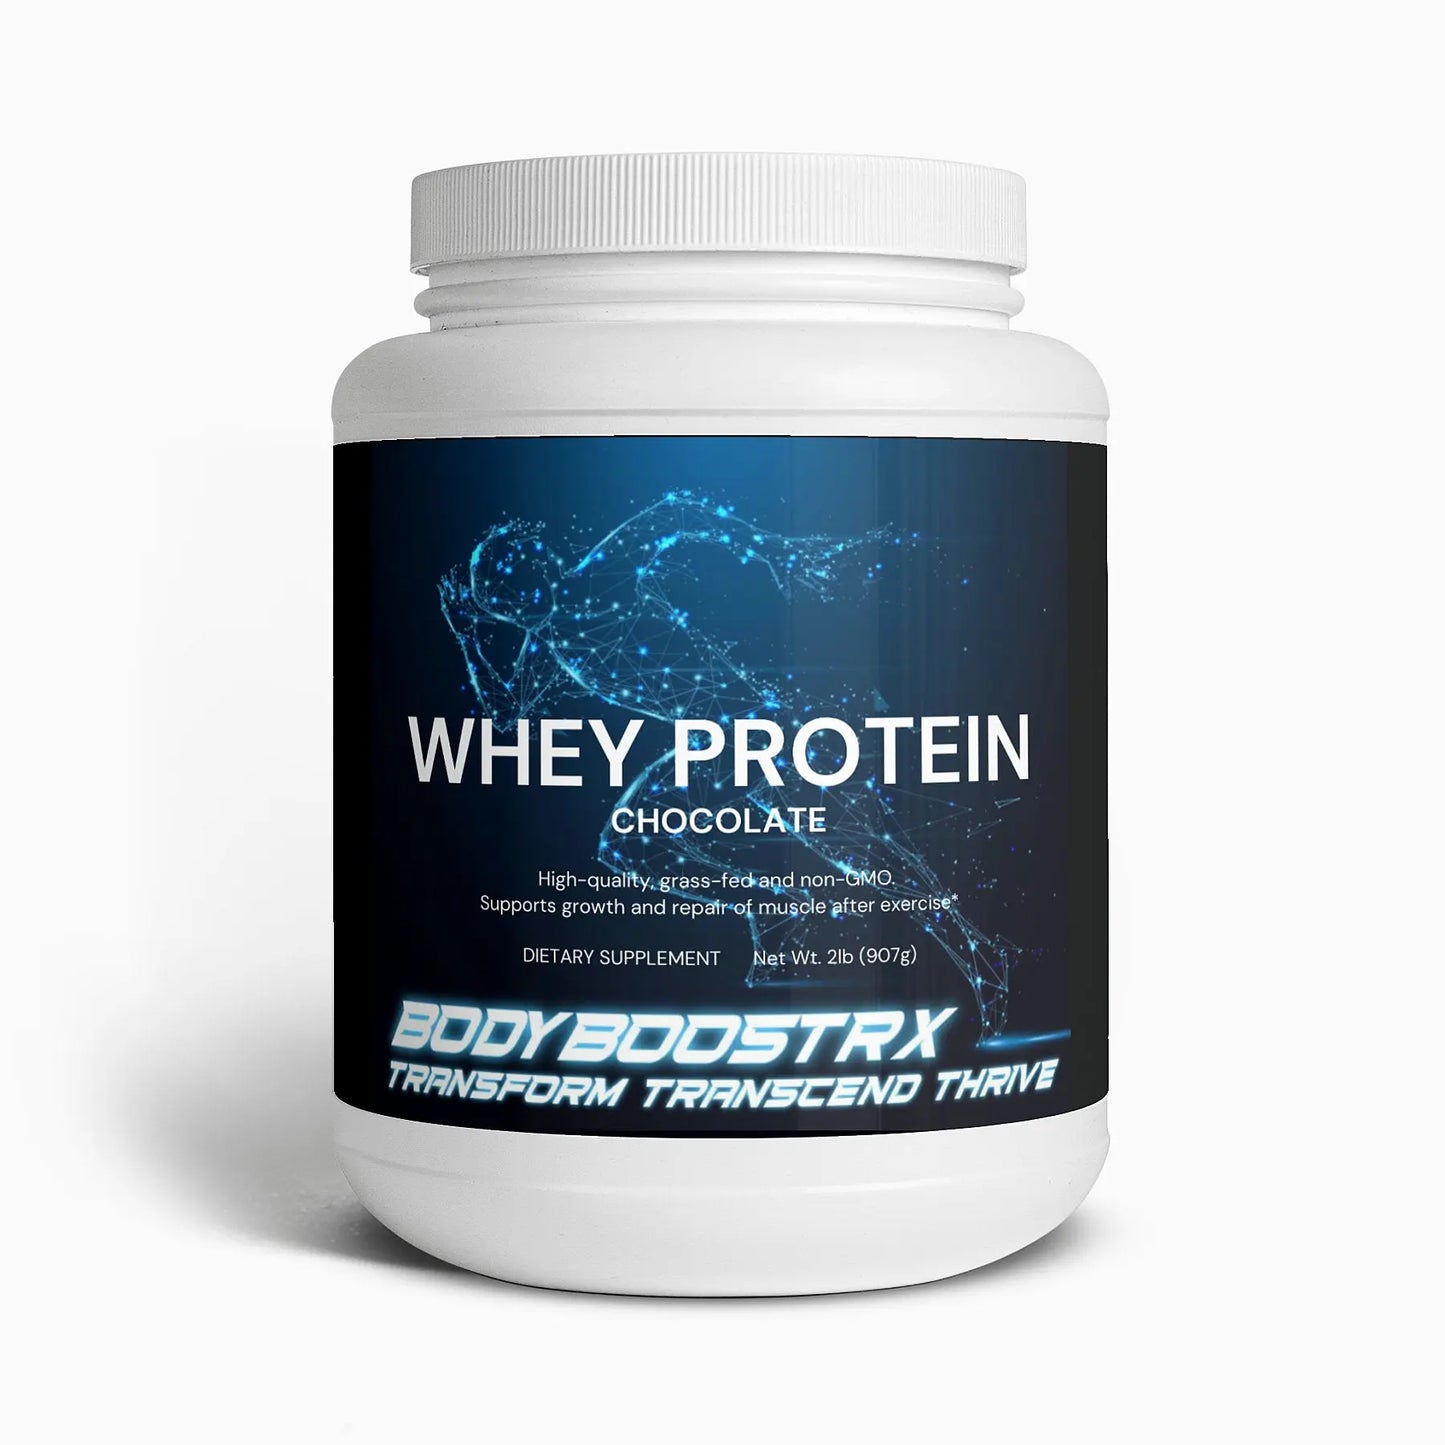 Whey Protein (Chocolate Flavour) - BodyBoostRx